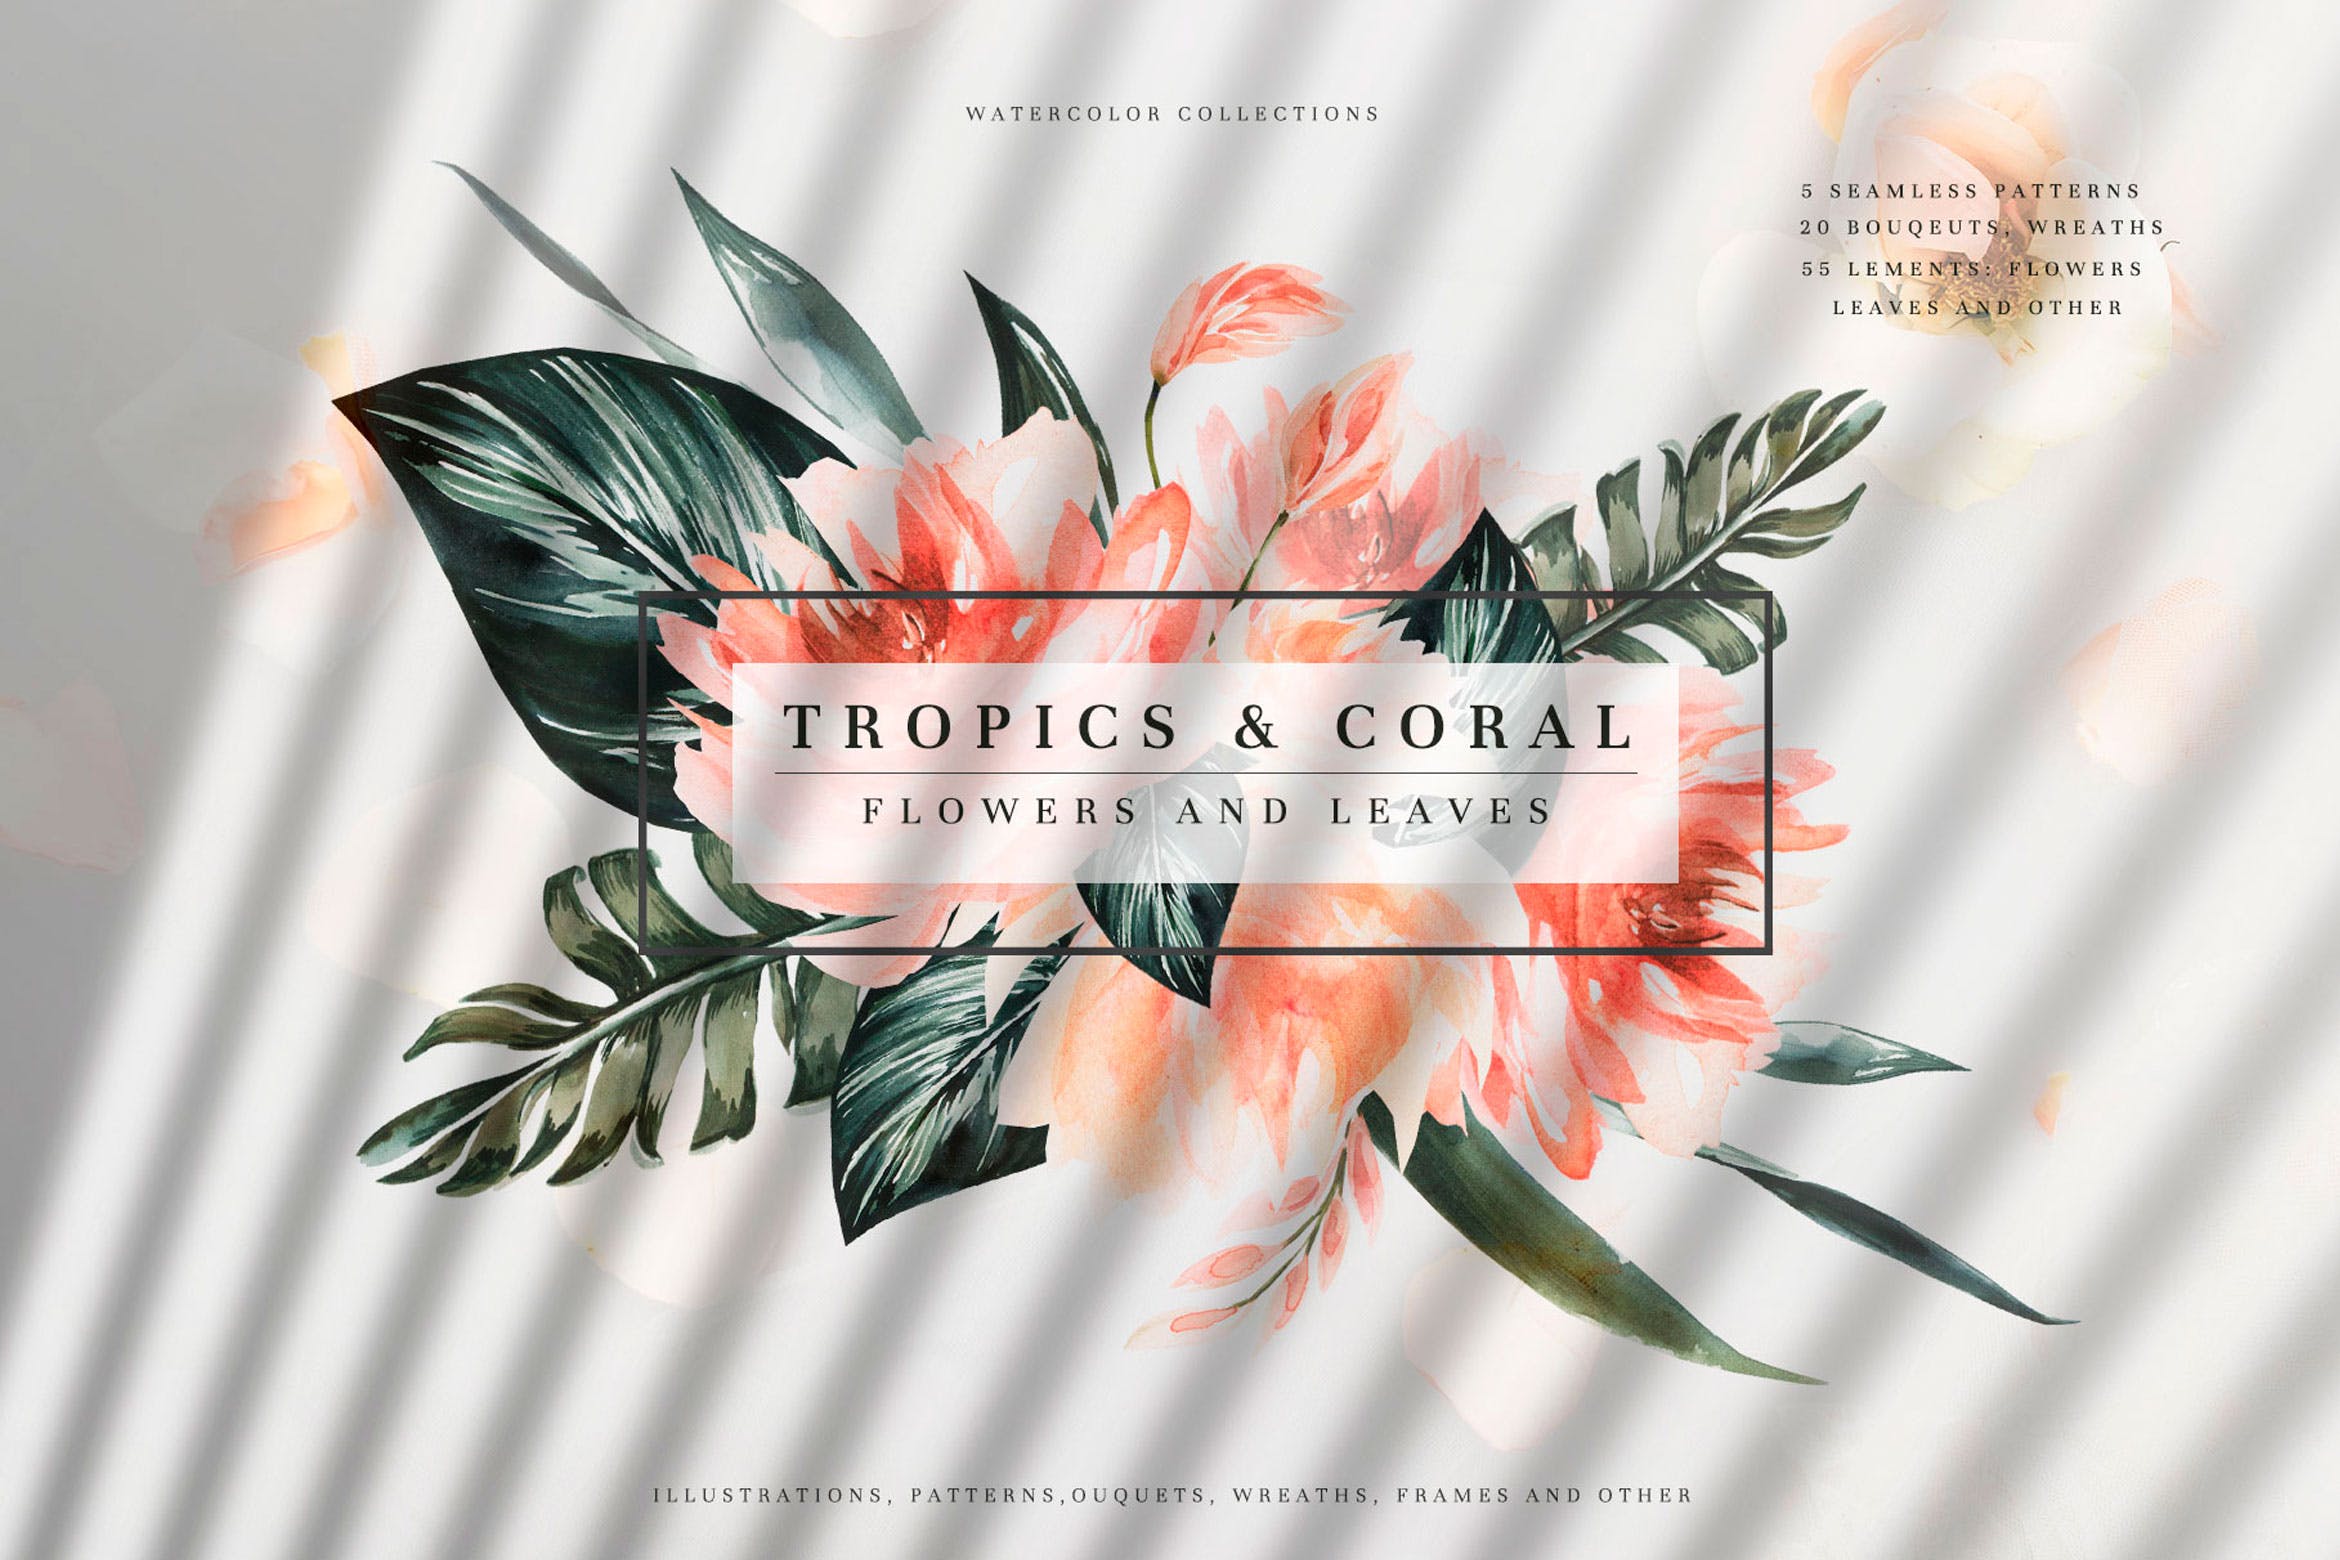 热带植物水彩手绘图案设计素材套装 Tropics & Coral Watercolor Set插图